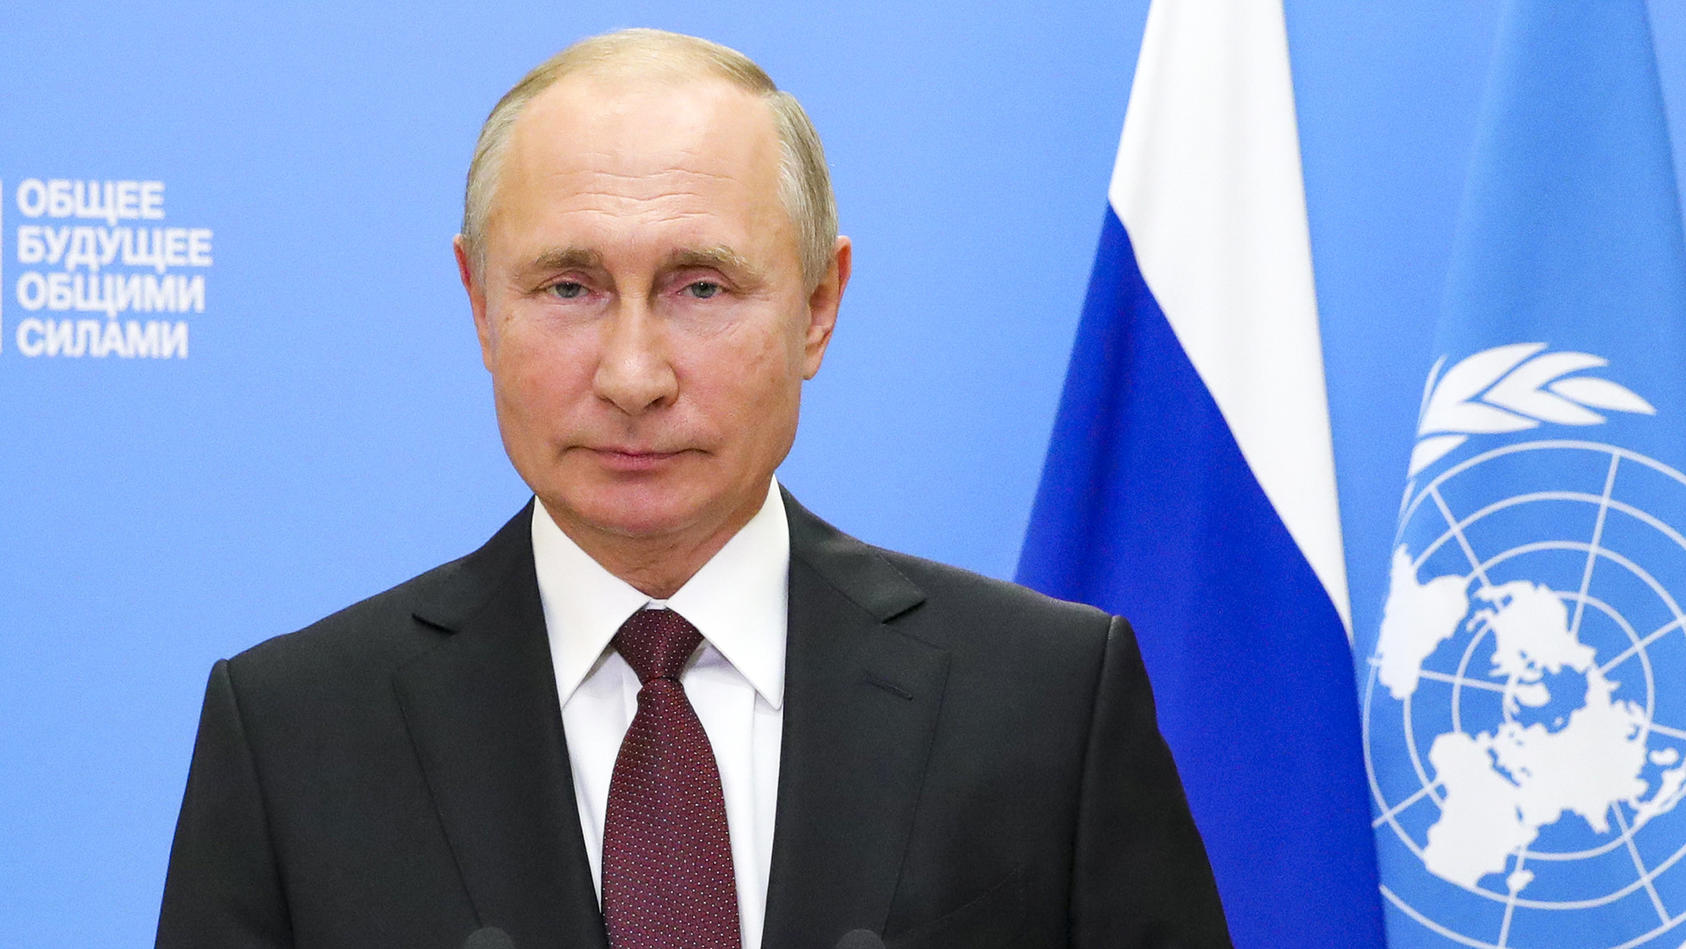 22.09.2020, Russland, Moskau: Wladimir Putin, Präsident von Russland, spricht während einer Aufzeichnung für eine Videobotschaft anlässlich des Beginns der Generaldebatte der 75. UN-Vollversammlung. Aufgrund der Corona-Pandemie findet die Debatte in 